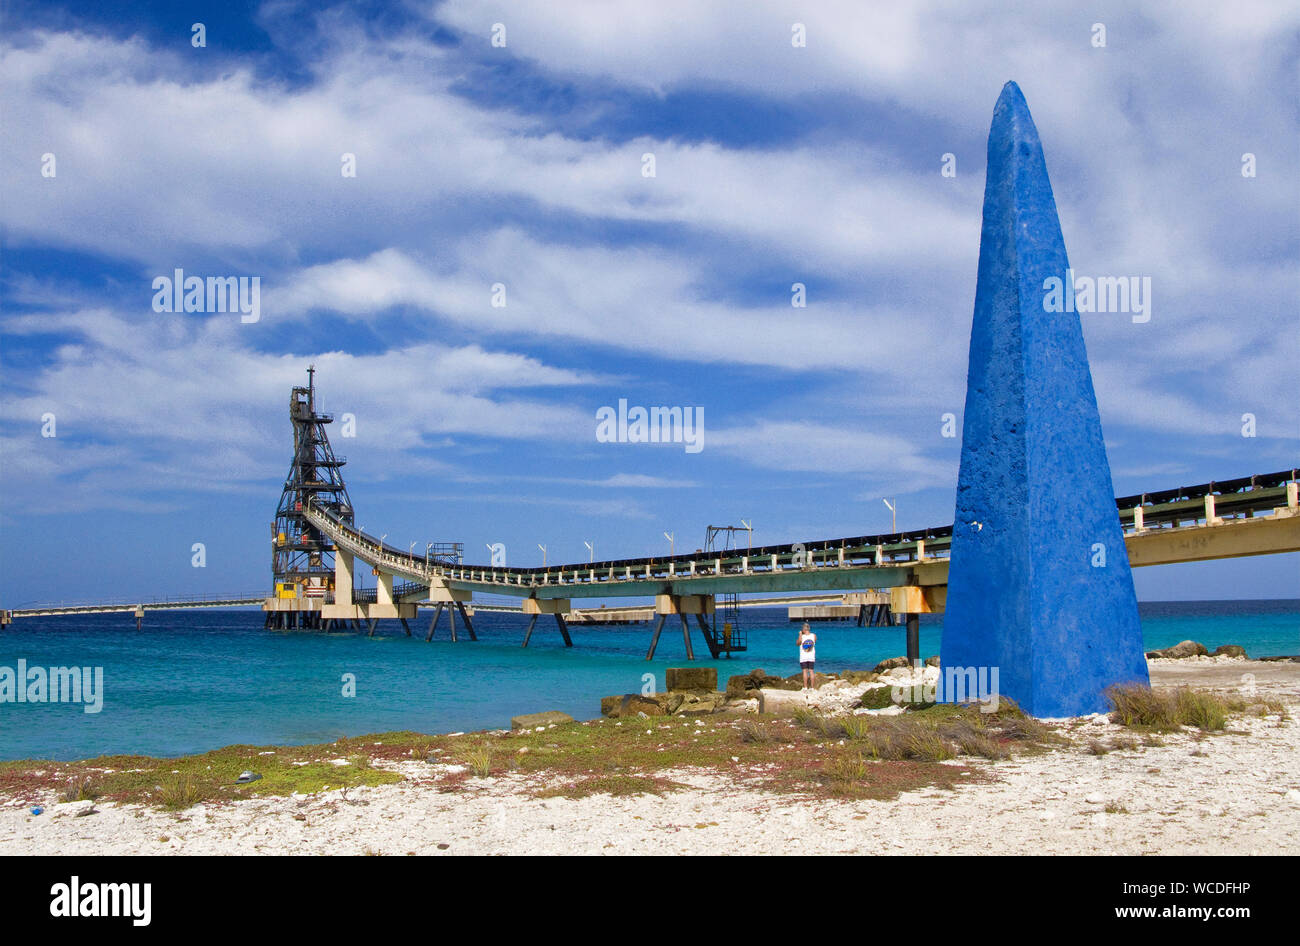 Obelisk at salt pier, builded in 1837 for ship orientation, salt transport, Bonaire, Netherland Antilles Stock Photo